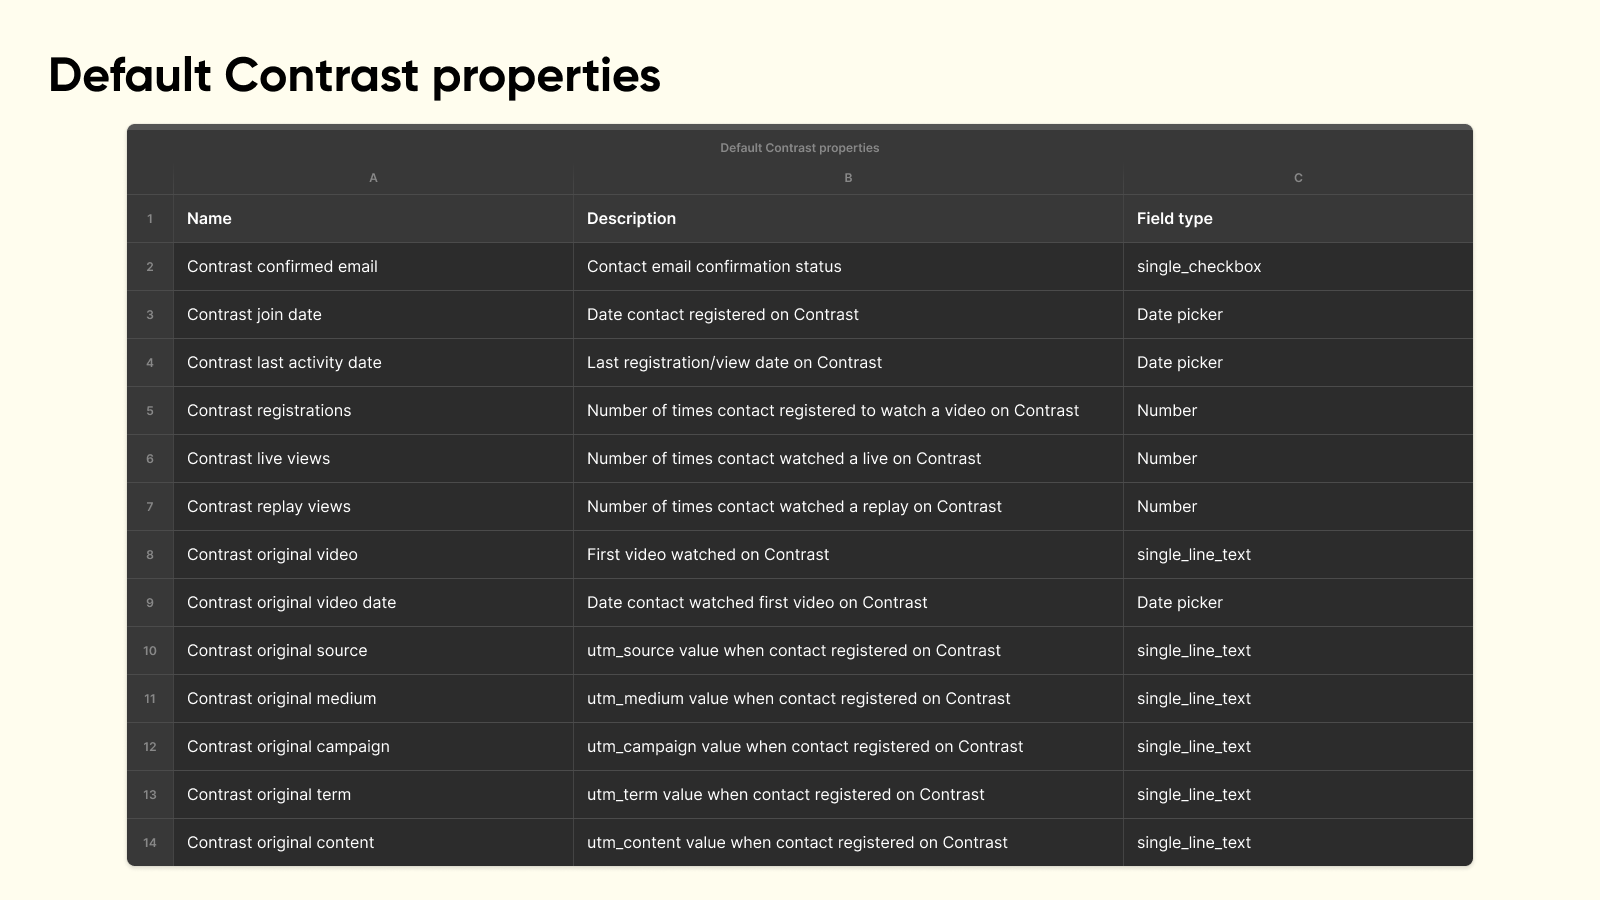 Contrast custom properties in HubSpot